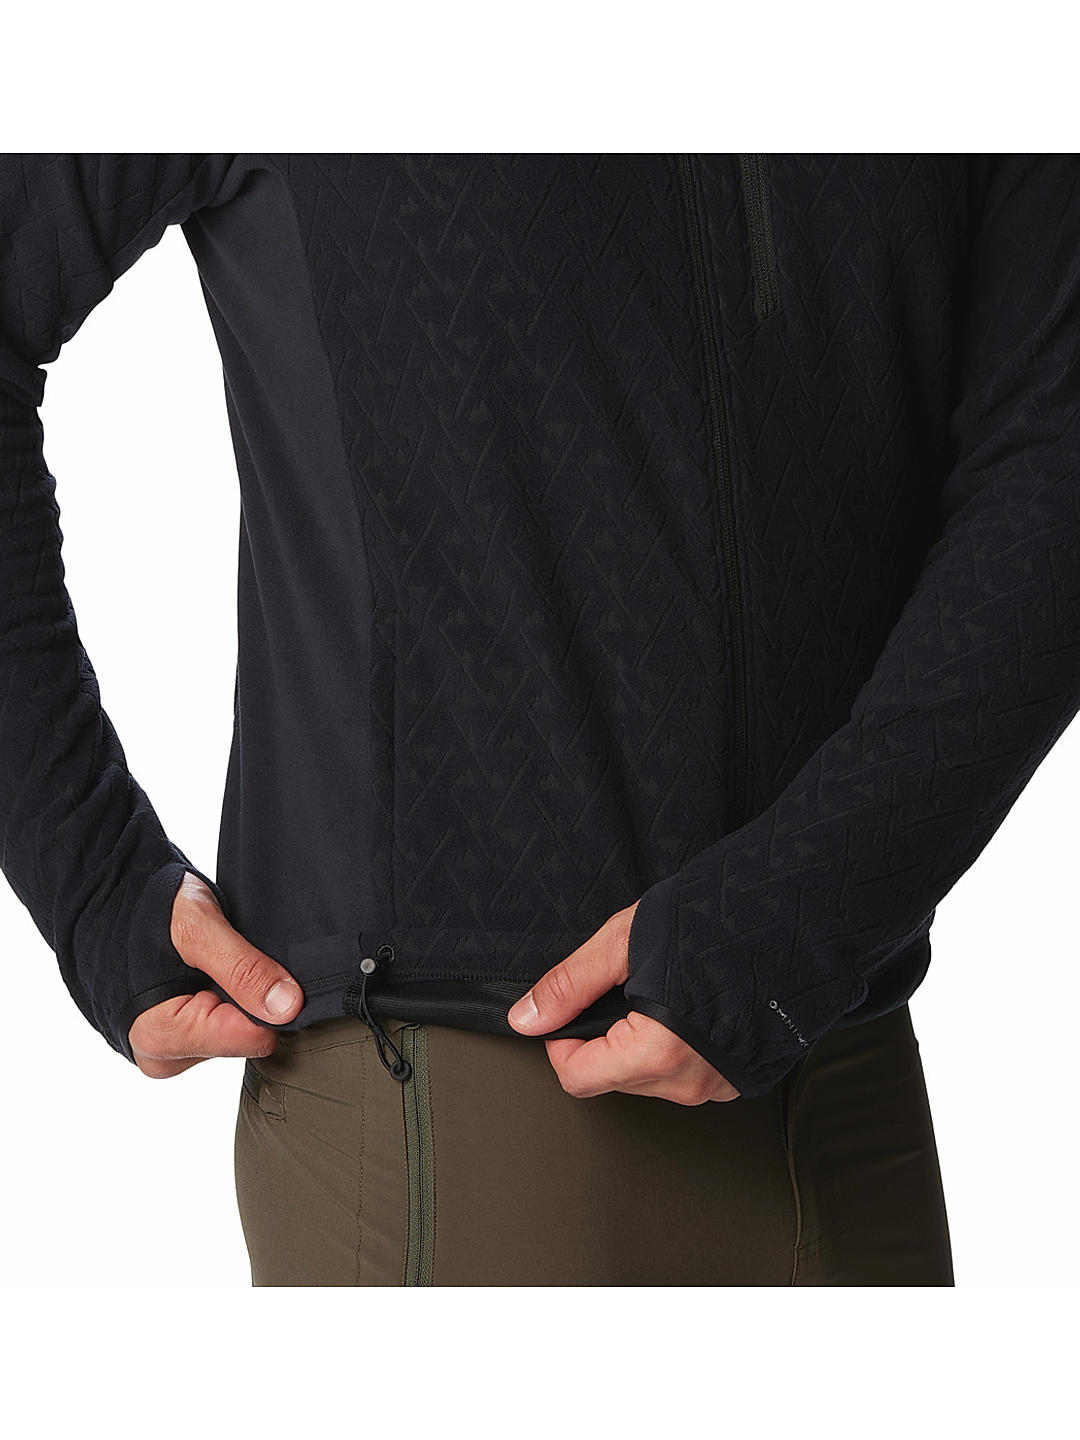 Buy Men Black Titan Pass 3.0 Full Zip Fleece Online at Columbia Sportswear